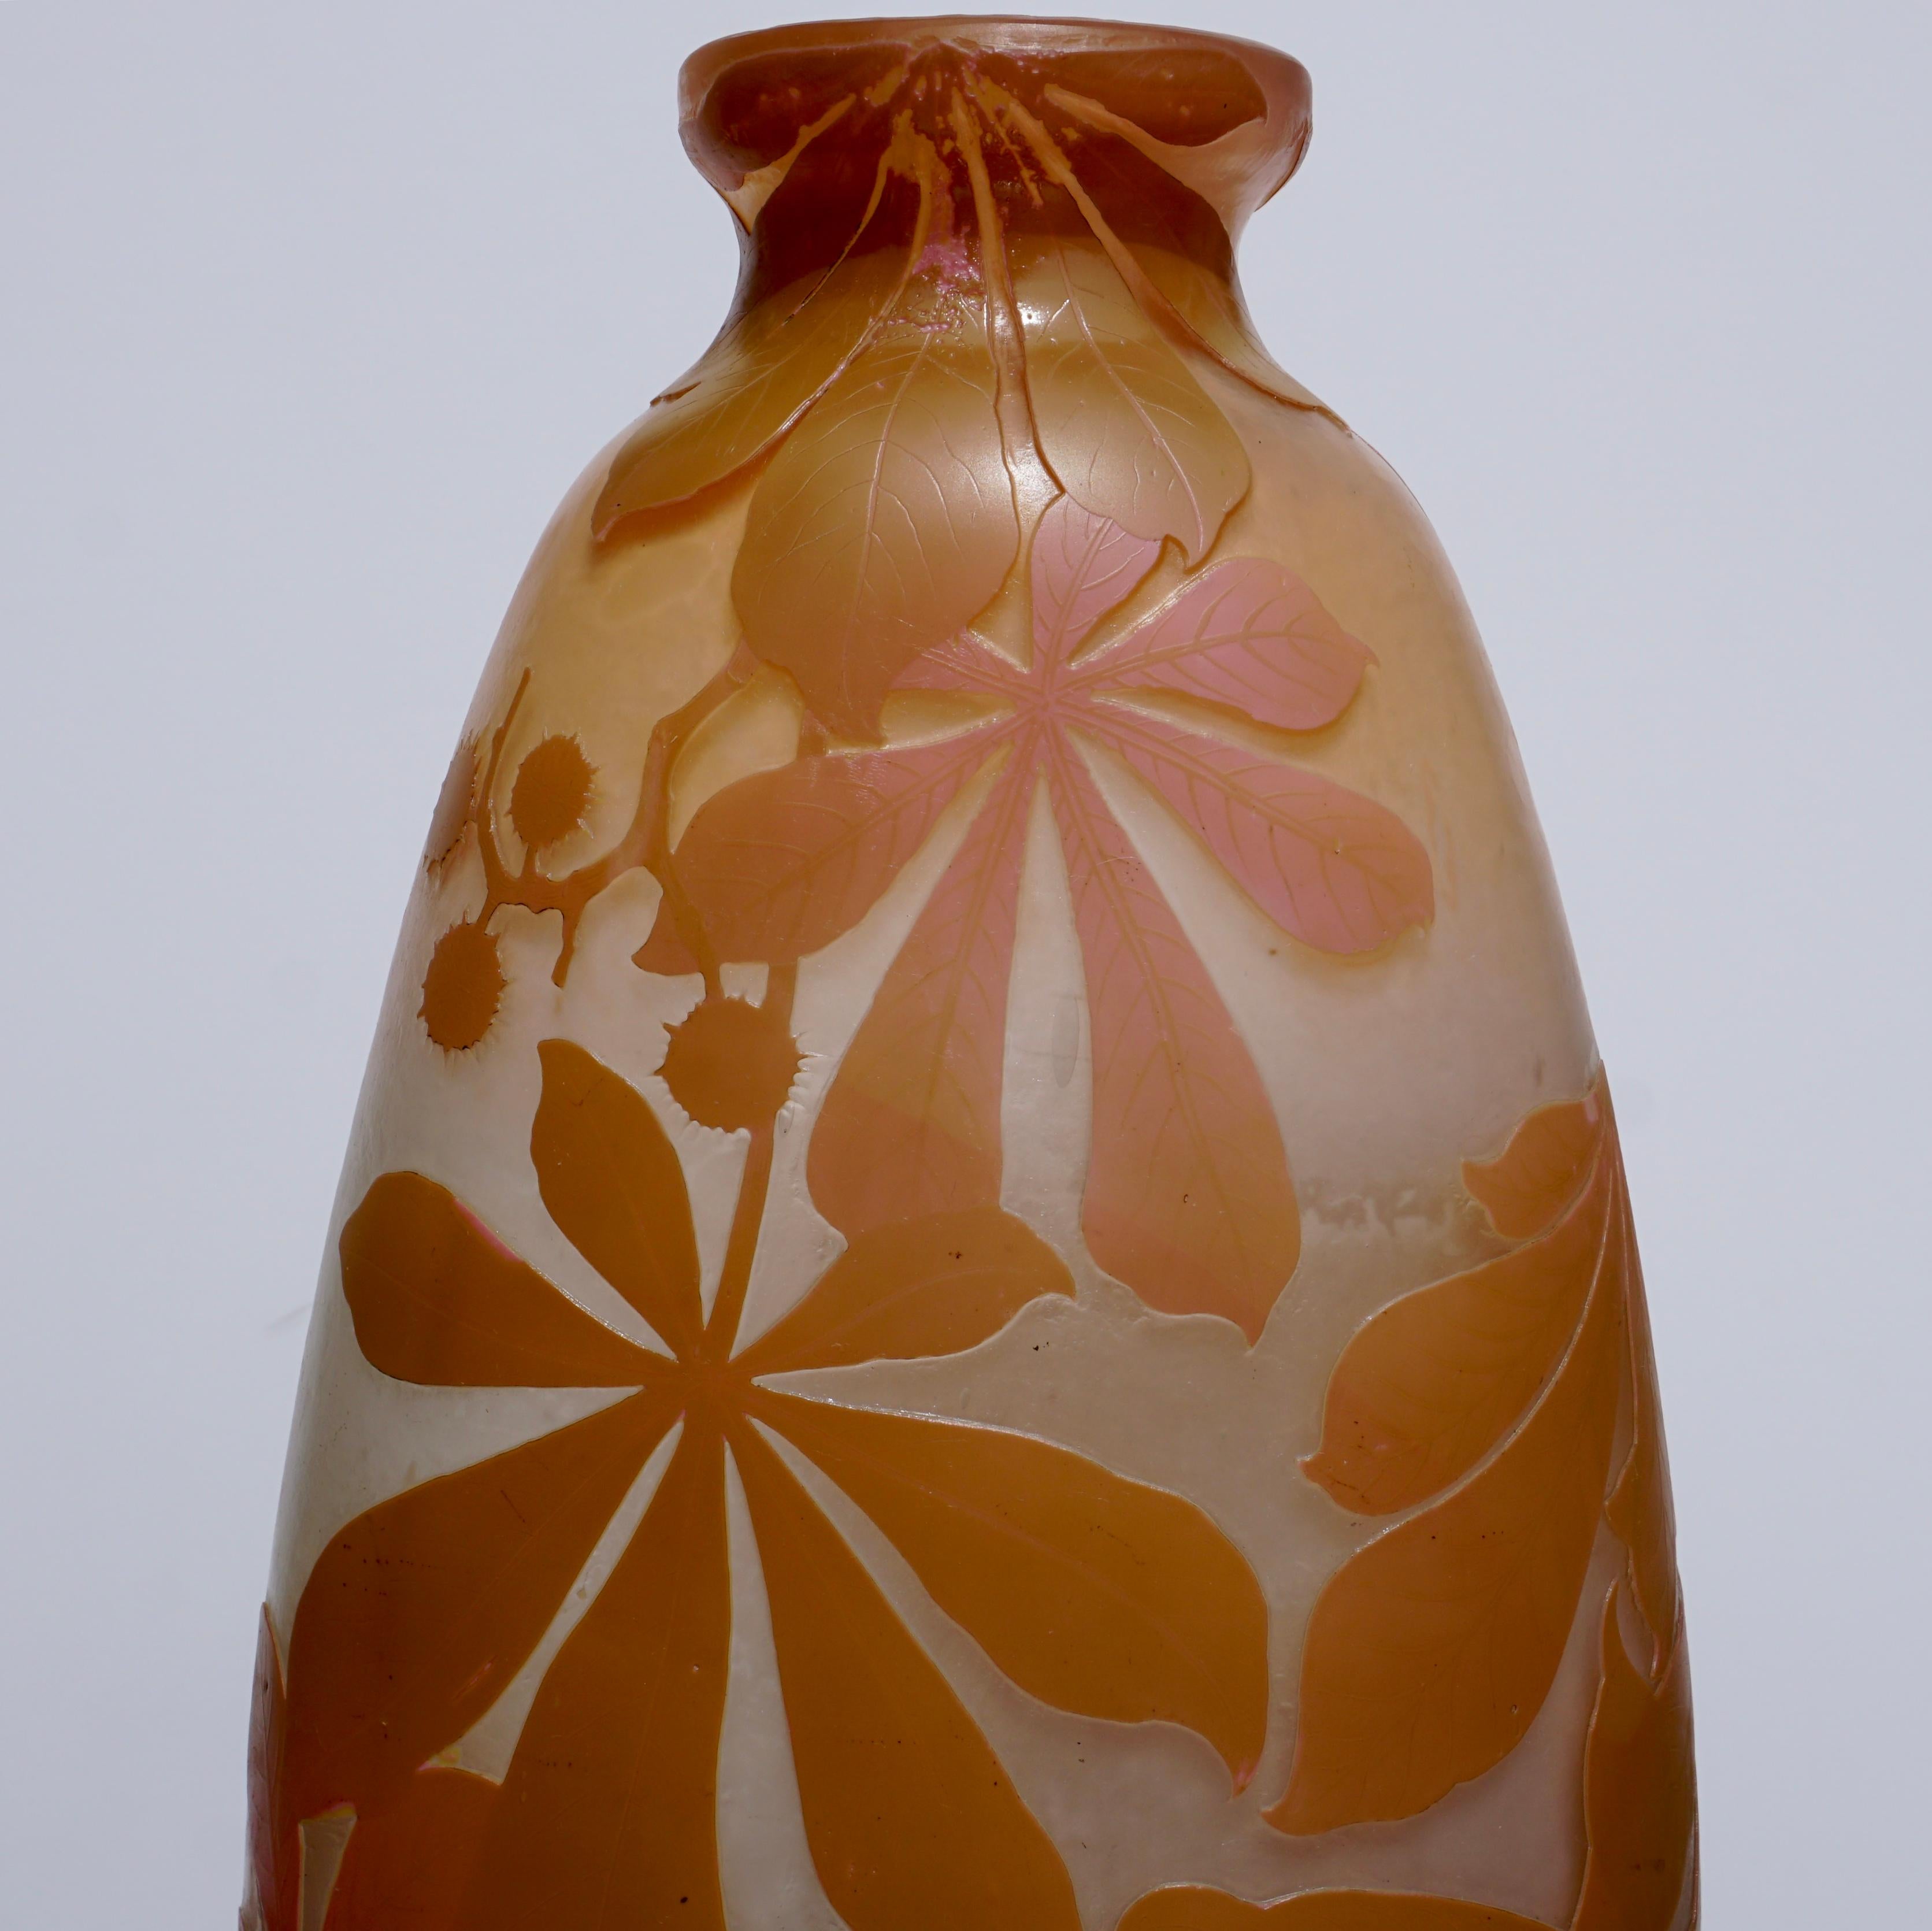 Un superbe vase à graisse sculpté à la roue et gravé à l'acide en quatre couleurs : rose, jaune, brun verdâtre et blanc sur fond crème. Les couleurs sont vives et la qualité de fabrication excellente. Une expression vraiment explosive de plantes en